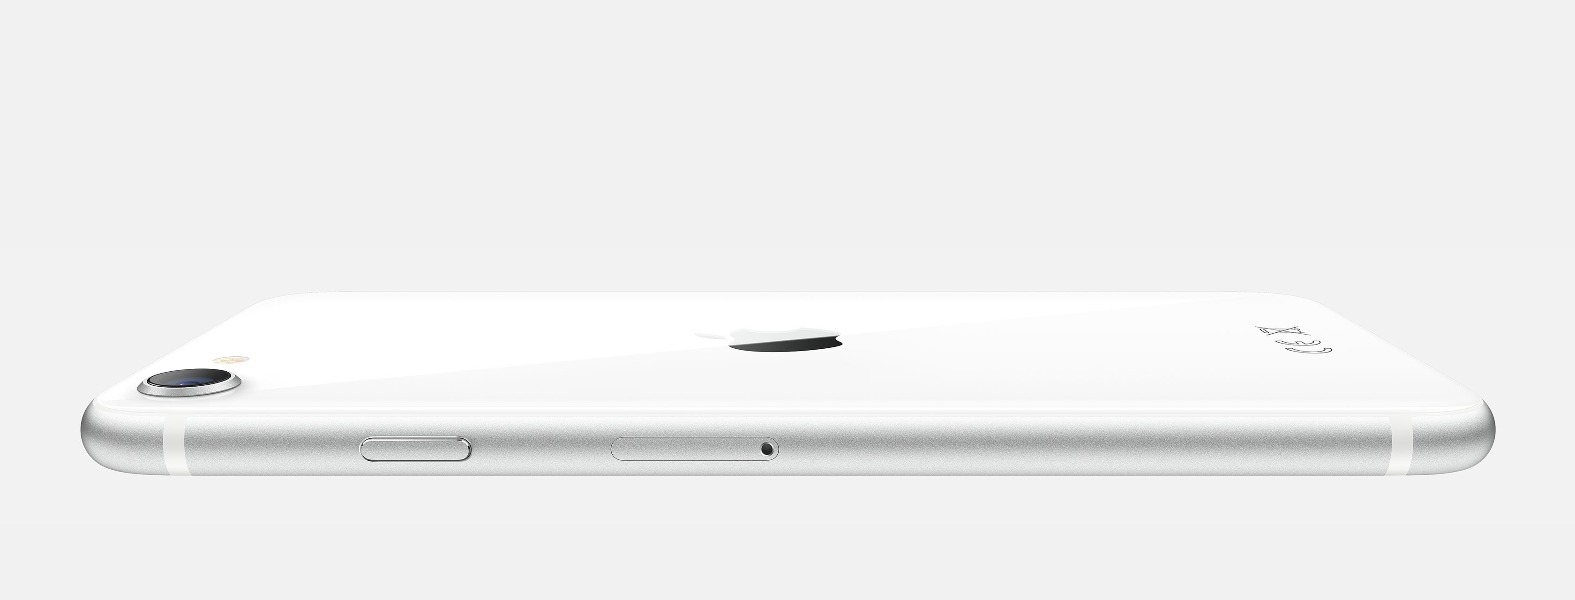 El iPhone más barato de Apple ha sido presentado